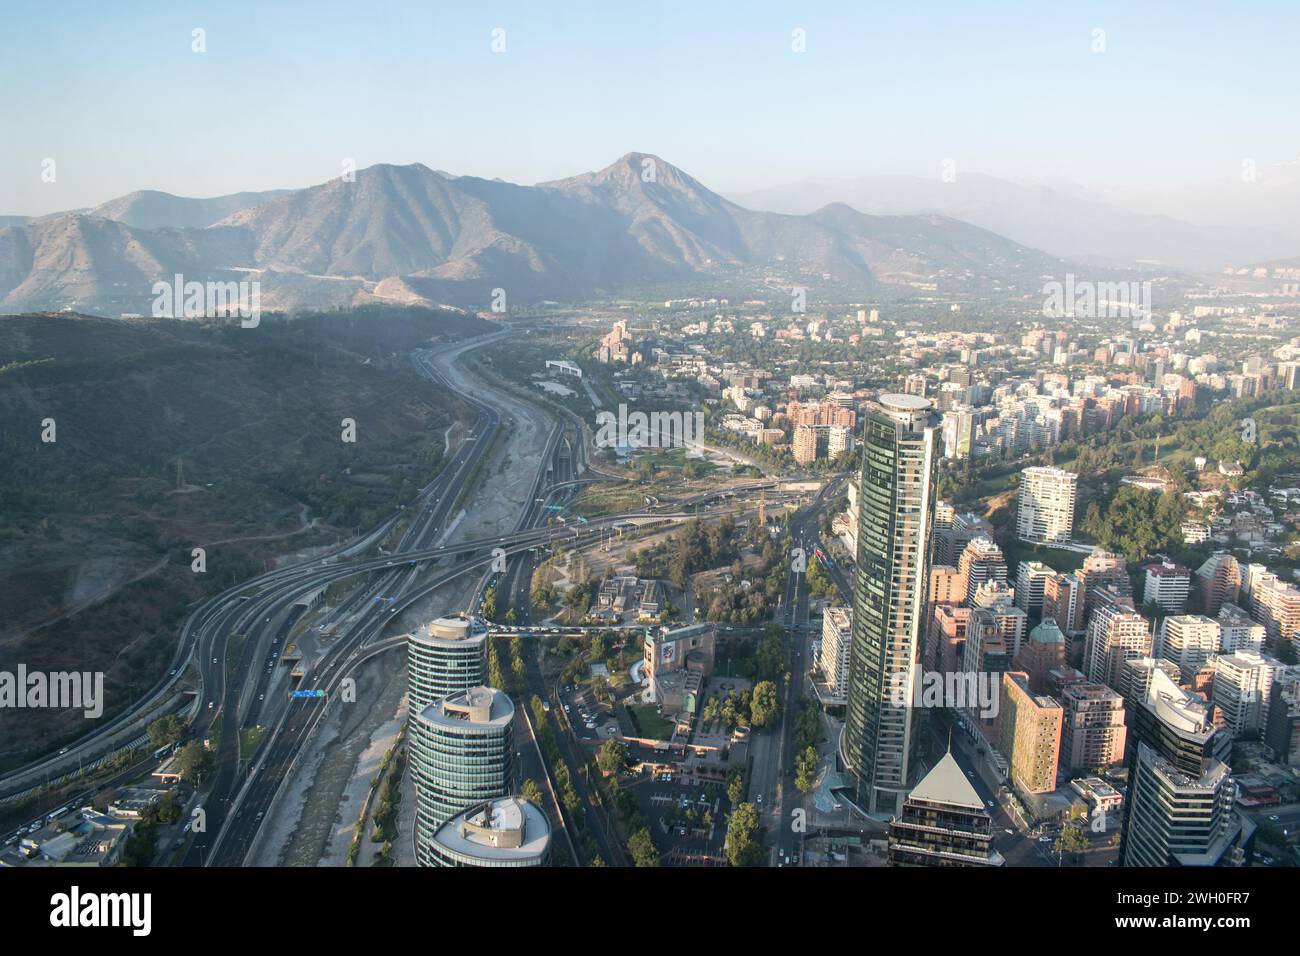 Vista panoramica dell'Autopista Costanera Norte, della catena montuosa di Manquehue e del quartiere Vitacura a Santiago, Cile. Foto Stock